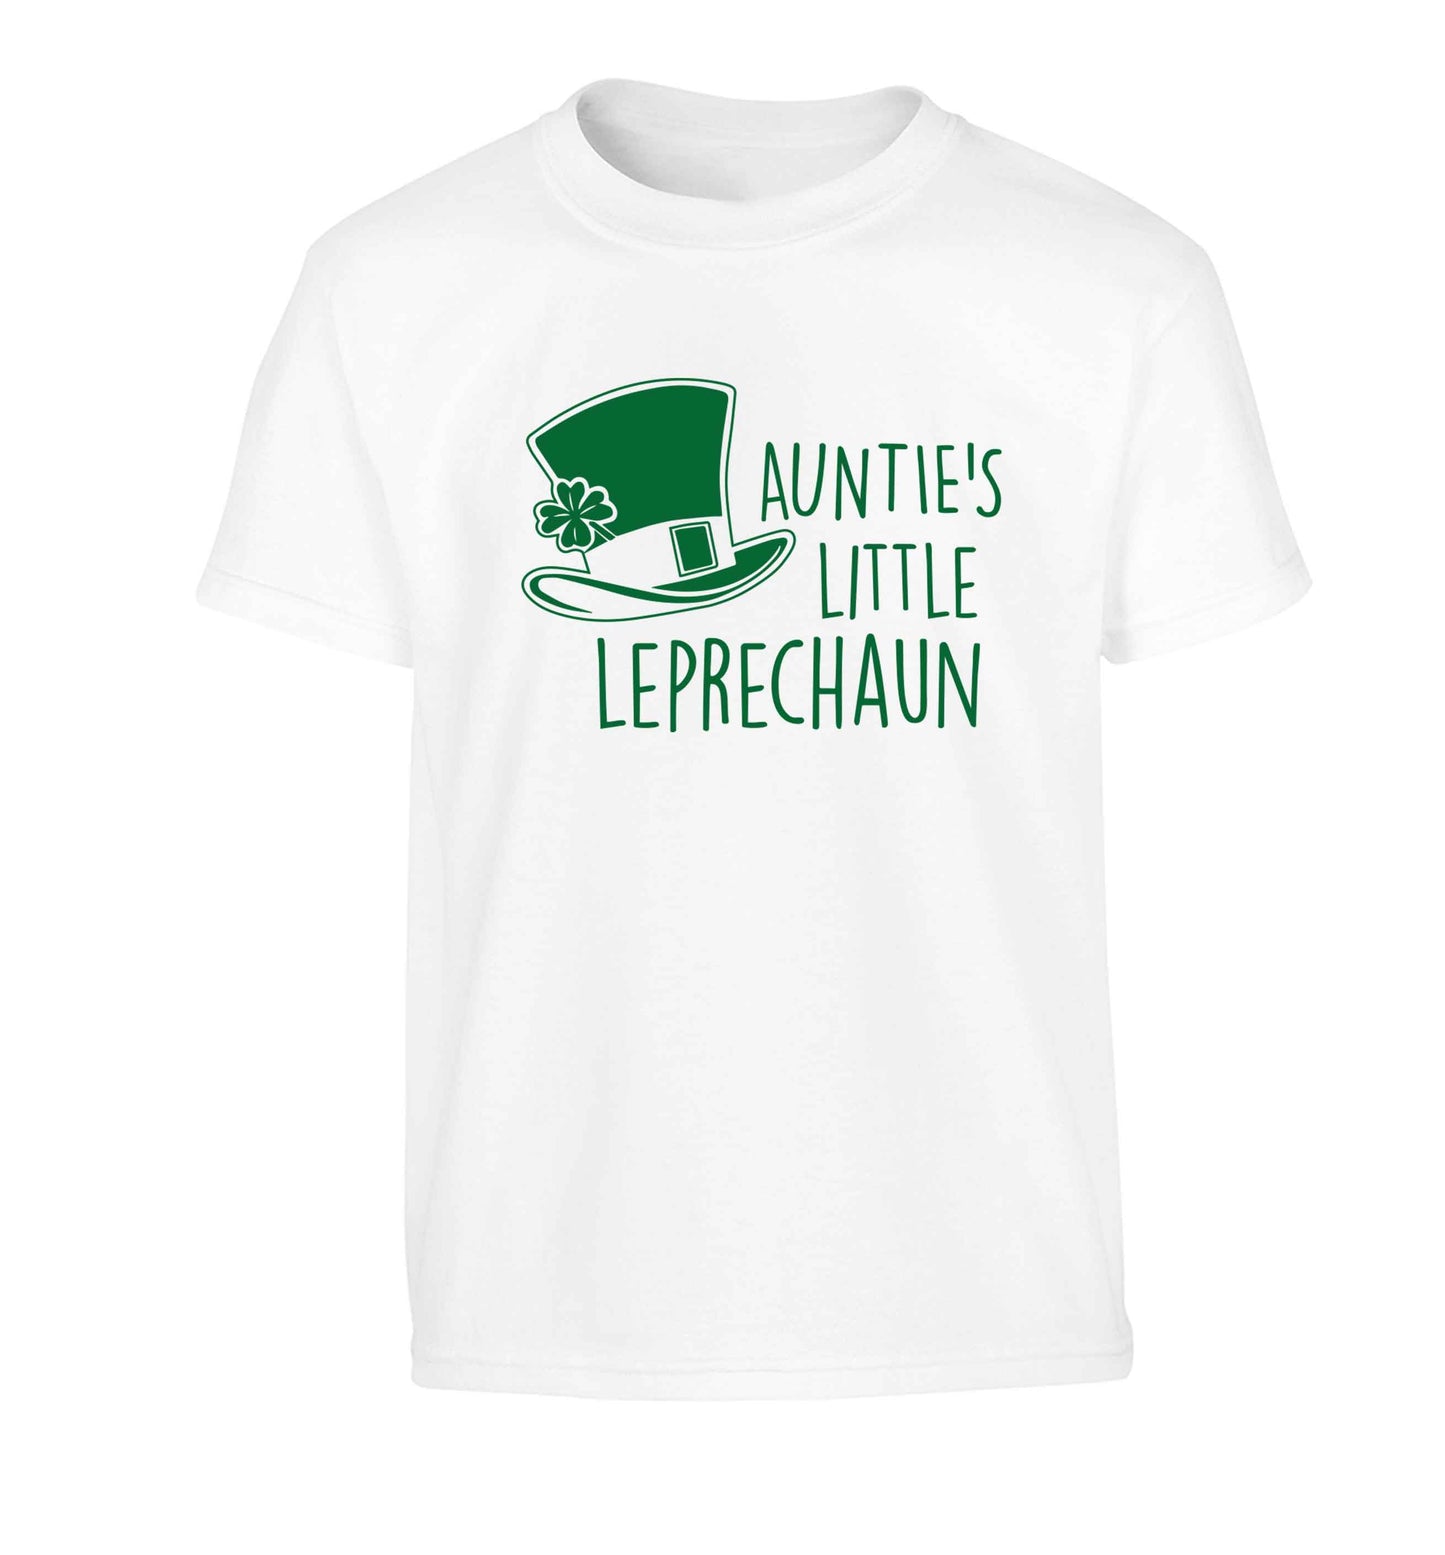 Auntie's little leprechaun Children's white Tshirt 12-13 Years